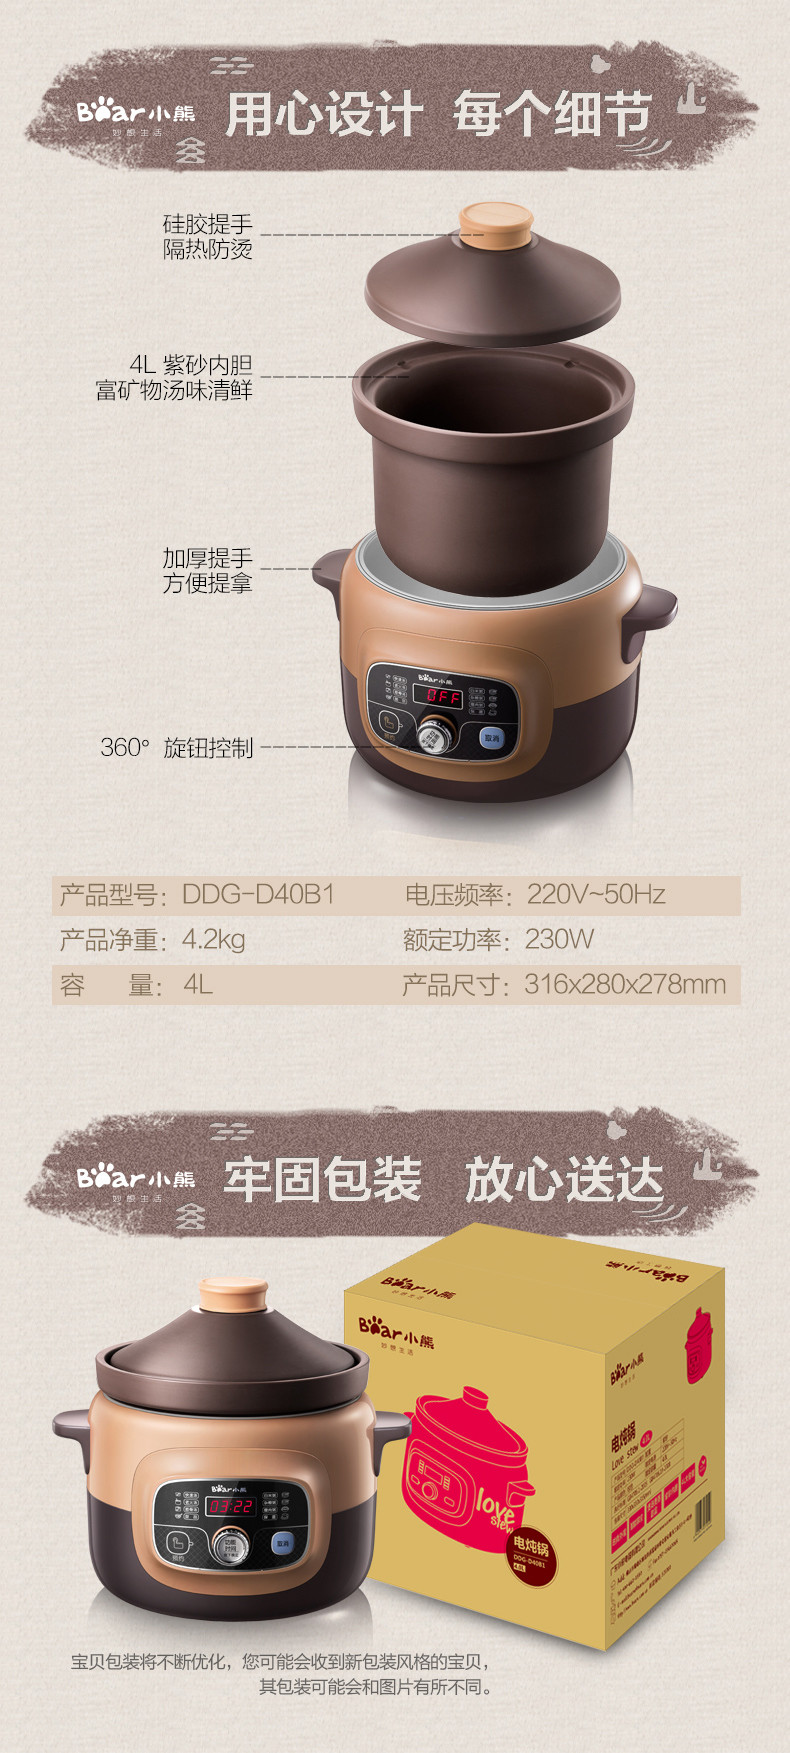 Bear/小熊 DDG-D40B1紫砂锅家用全自动电炖盅燕窝电炖锅煲汤煮粥